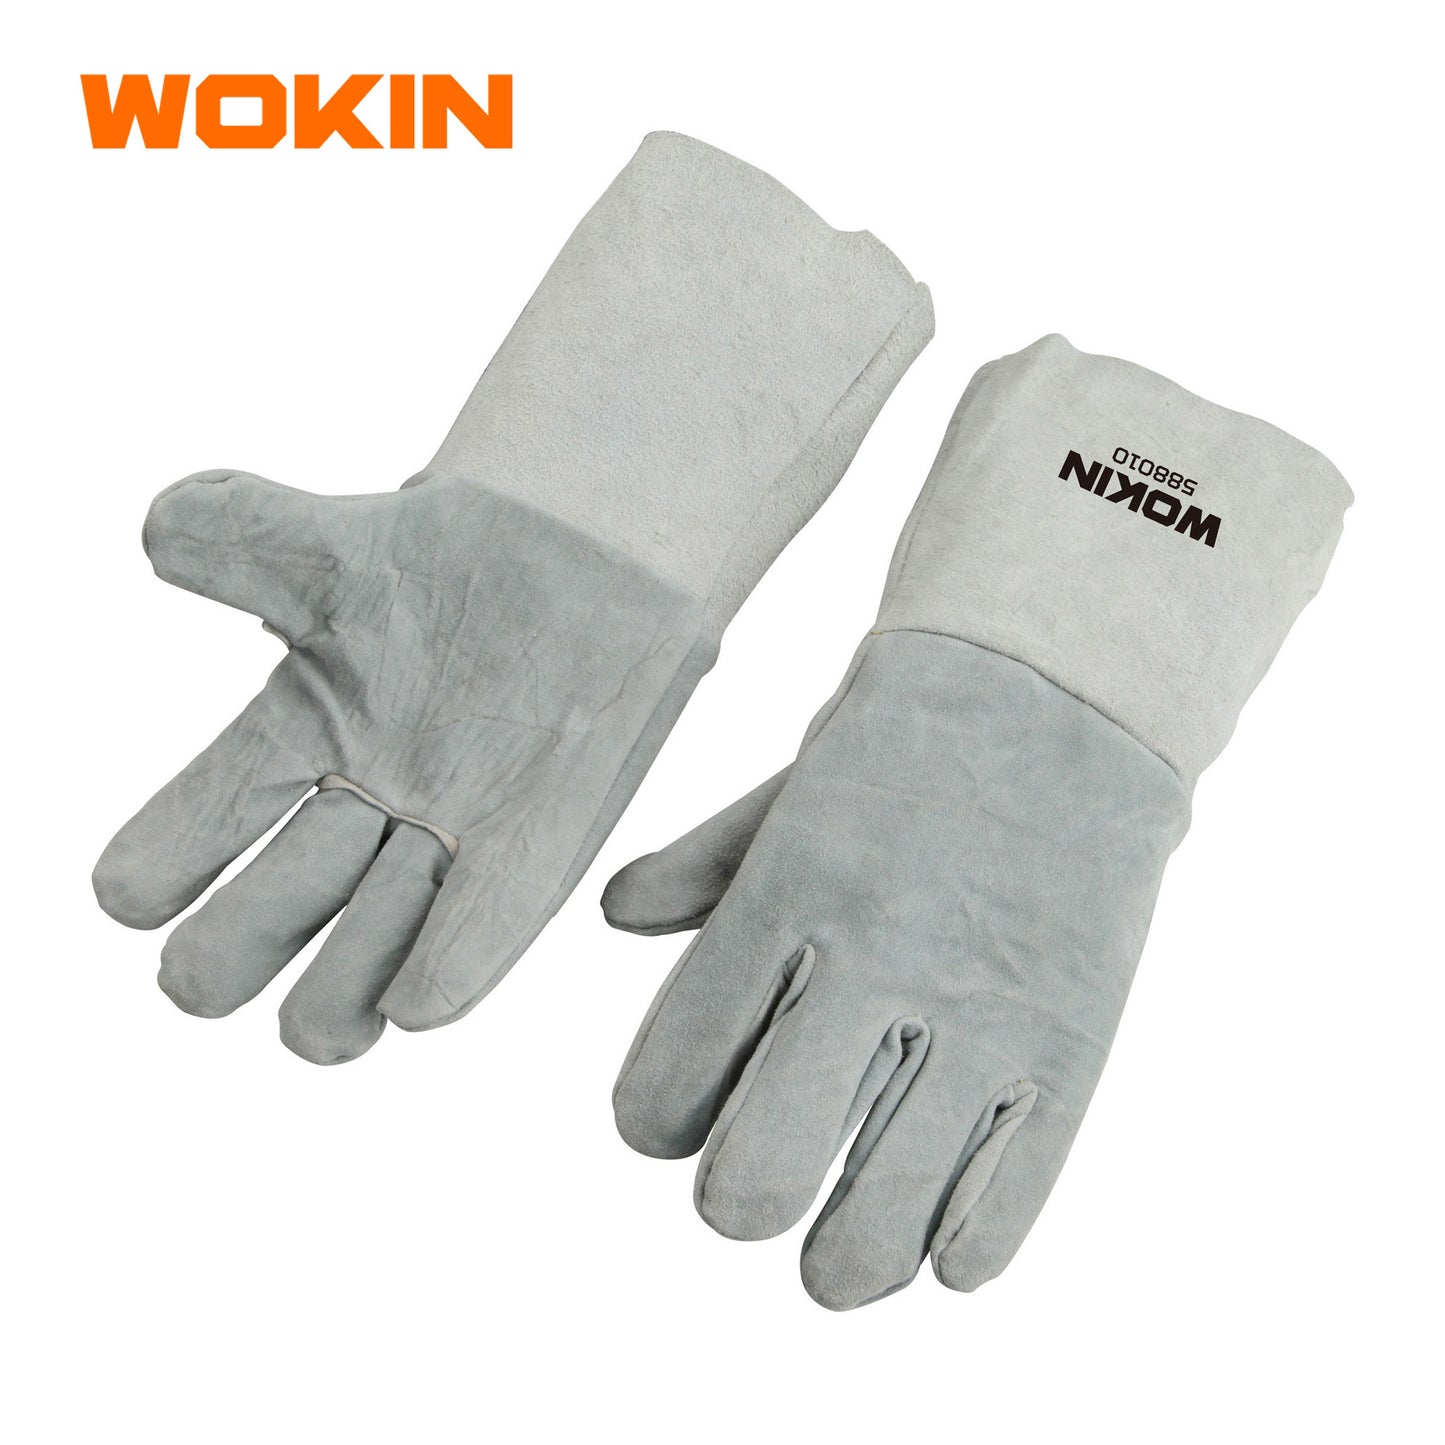 Wokin Welding Gloves